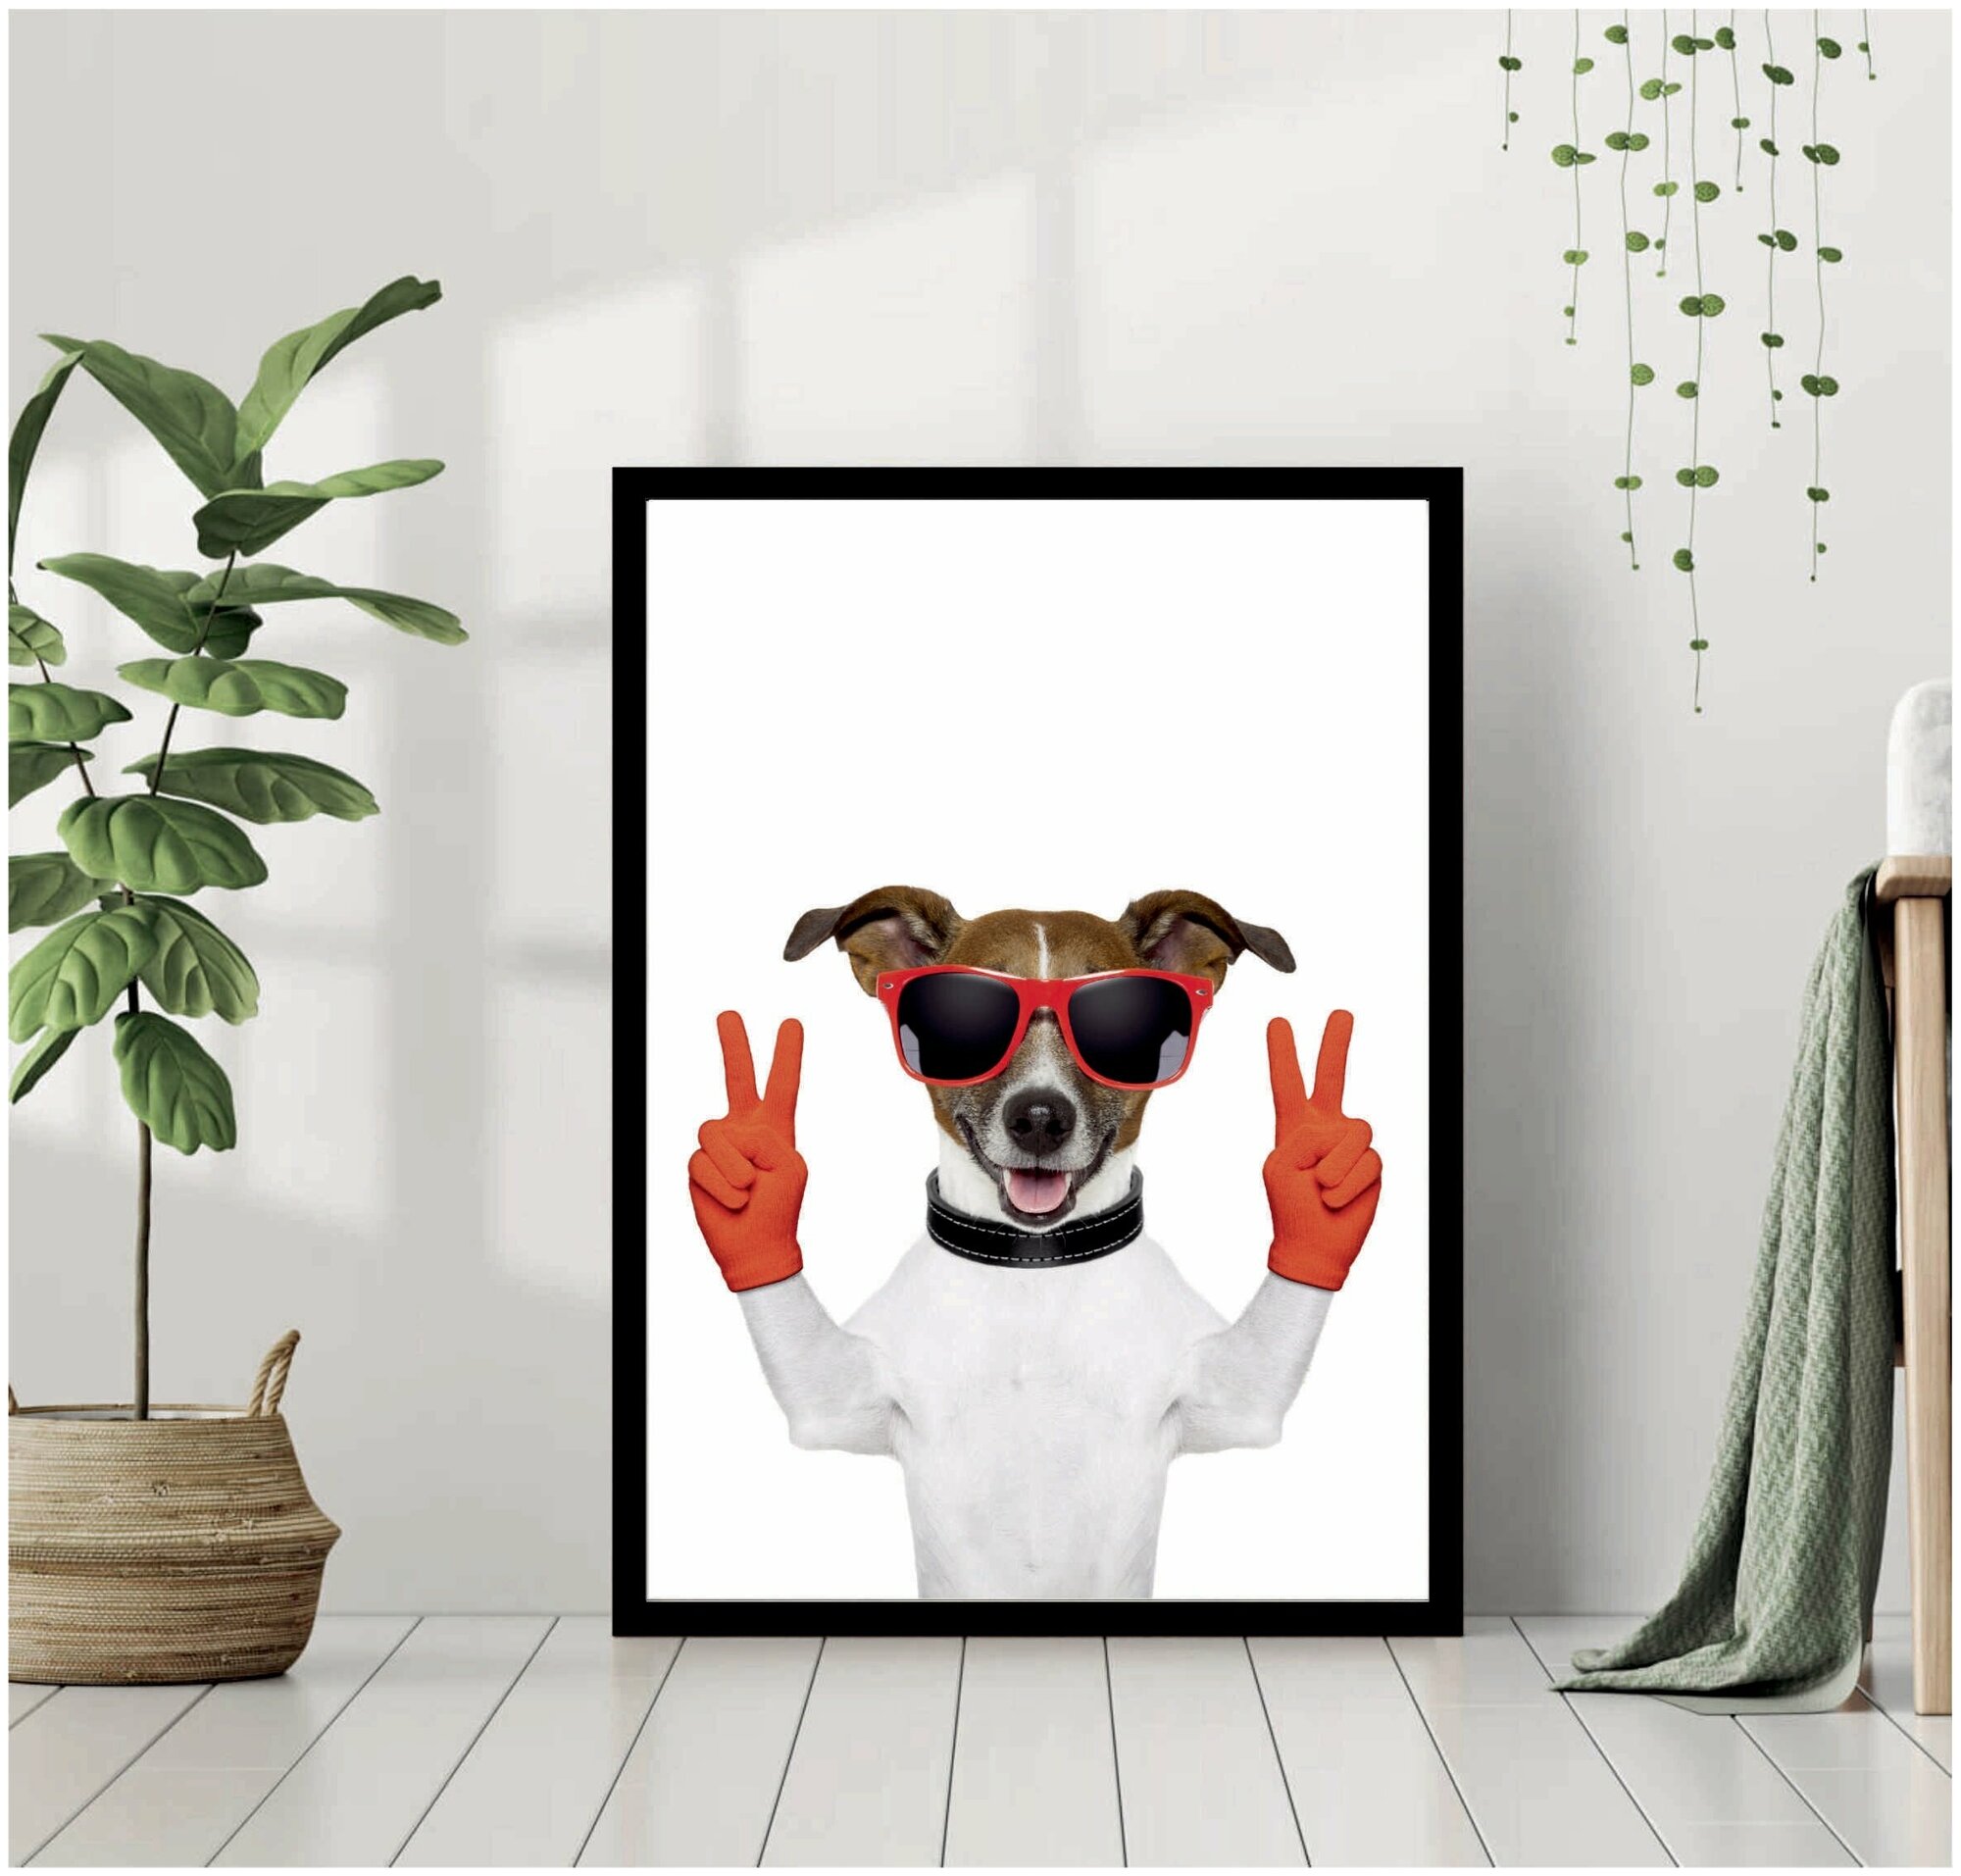 Постер В рамке "Собака в красных очках и перчатках" 40 на 50 (черная рама) / Картина для интерьера / Плакат / Постер на стену / Интерьерные картины